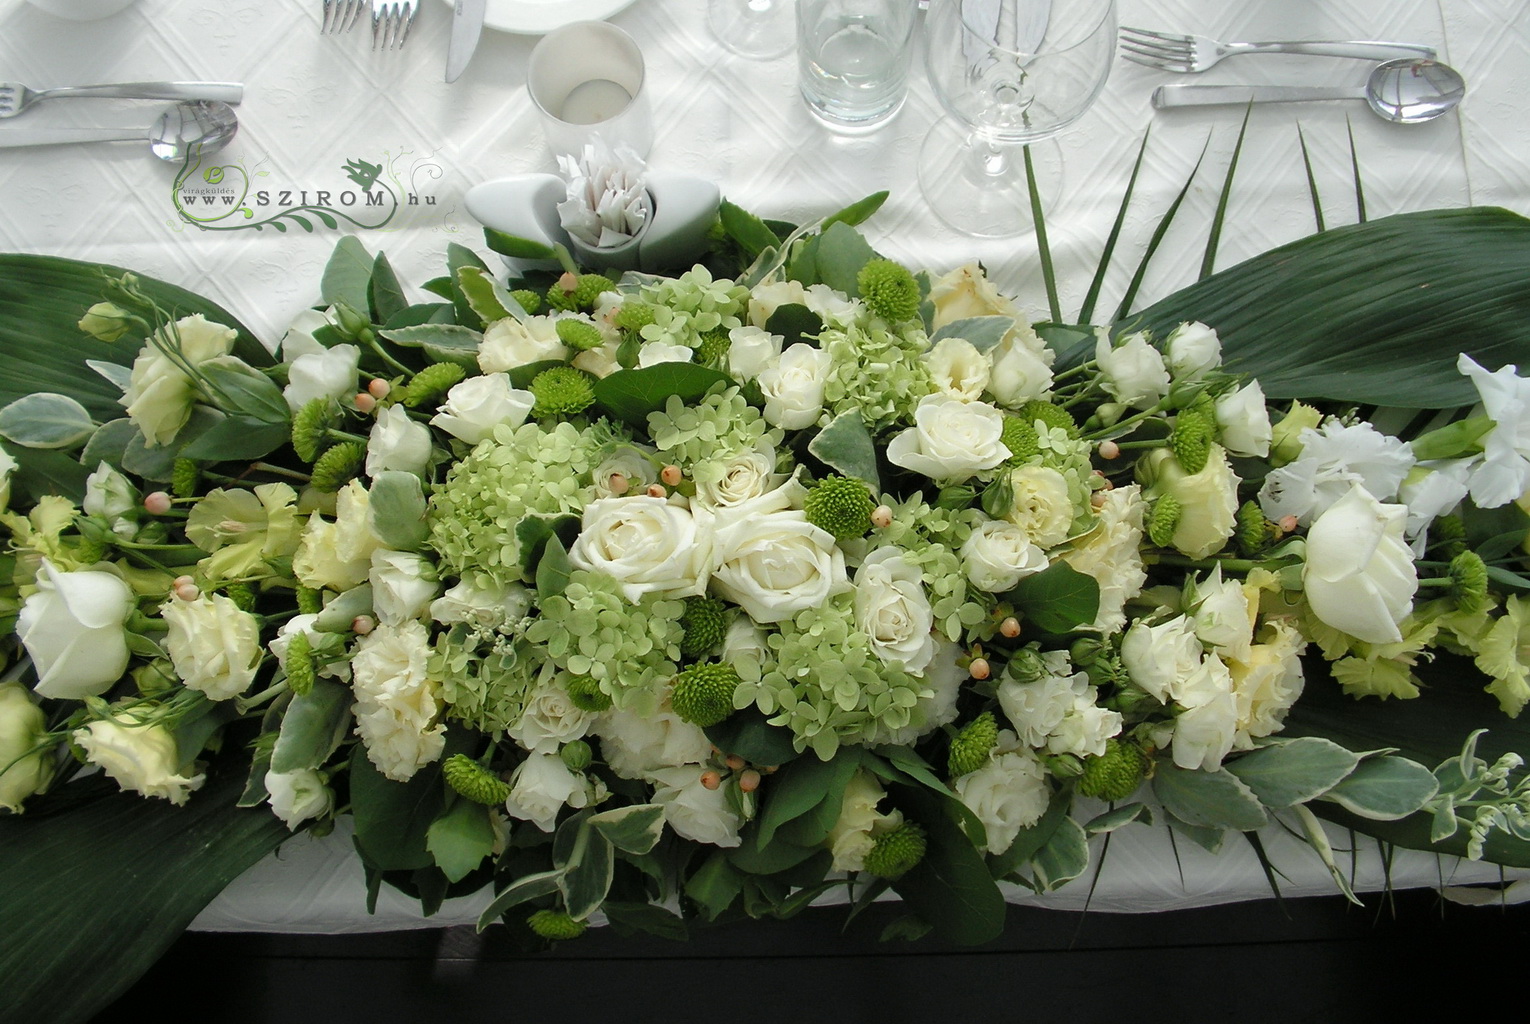 Virágküldés Budapest - Főasztaldísz (rózsa, liziantusz, hortenzia, gomb krizi, kardvirág, fehér, zöld), Spoon hajó, esküvő